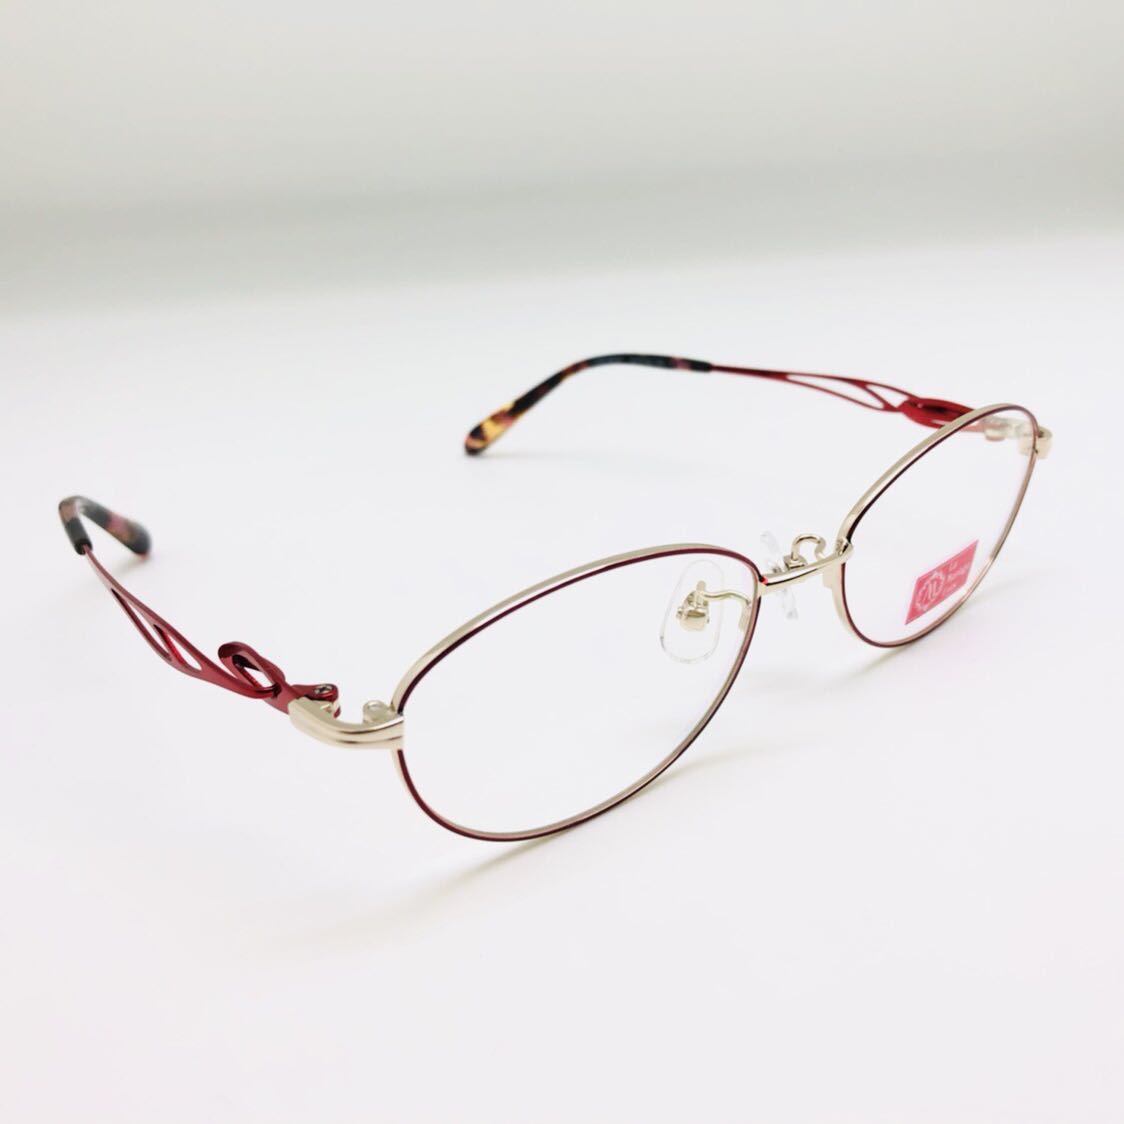 新品 La Mariage Eeys 眼鏡 メガネ 綺麗 上品 オシャレ かわいい 赤色系 レッド系_画像5